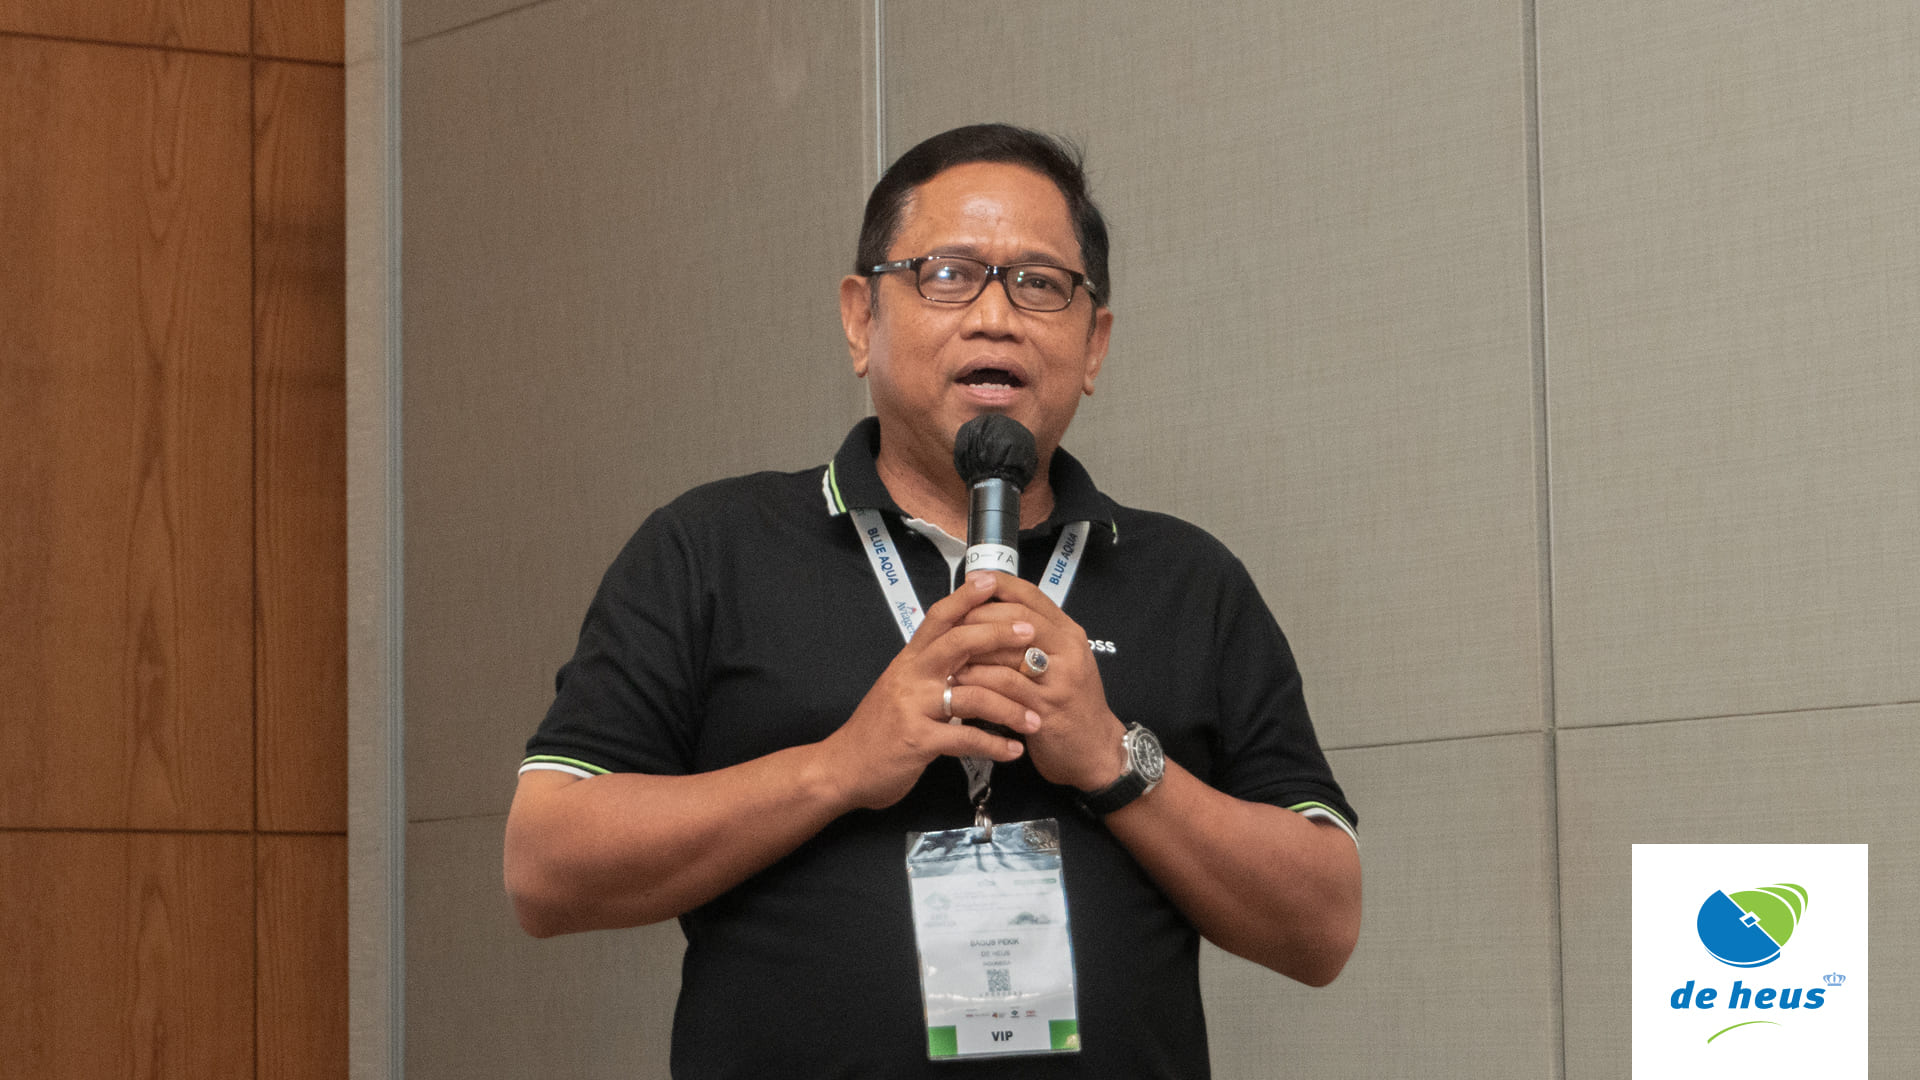 Bagus pekik sebagai kepala divisi unggas De Heus Indonesia siap memberikan solusi bagi peternak unggas di Indonesia